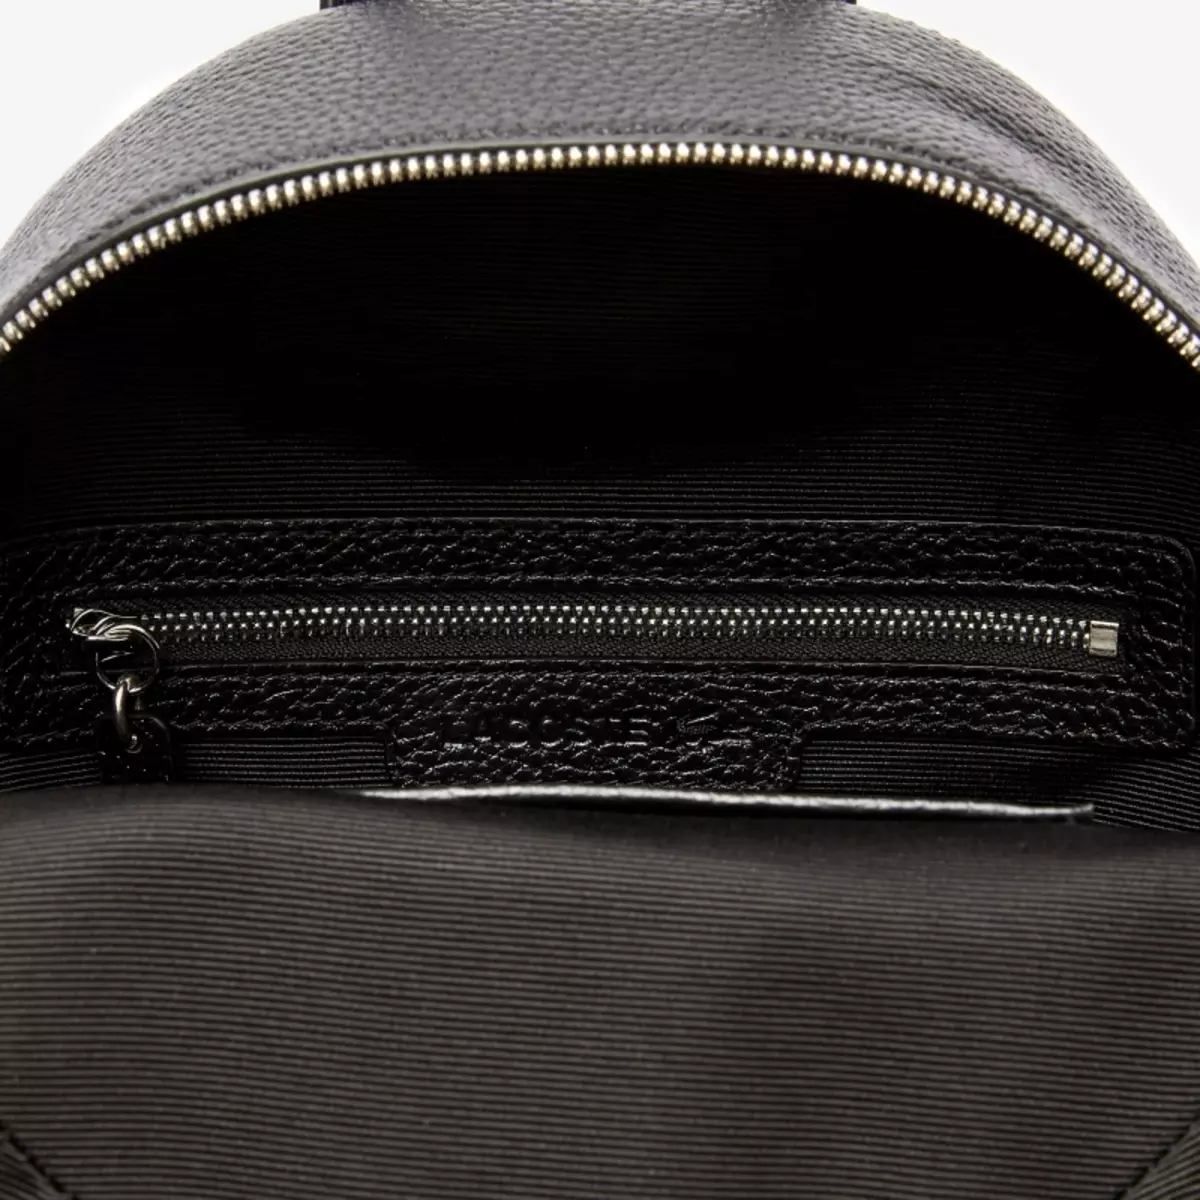 กระเป๋าเป้ LACOSTE: สตรีและบุรุษ, สีดำและสีน้ำเงินสีเขียว, กระเป๋าเป้หนังอื่น ๆ 15408_45